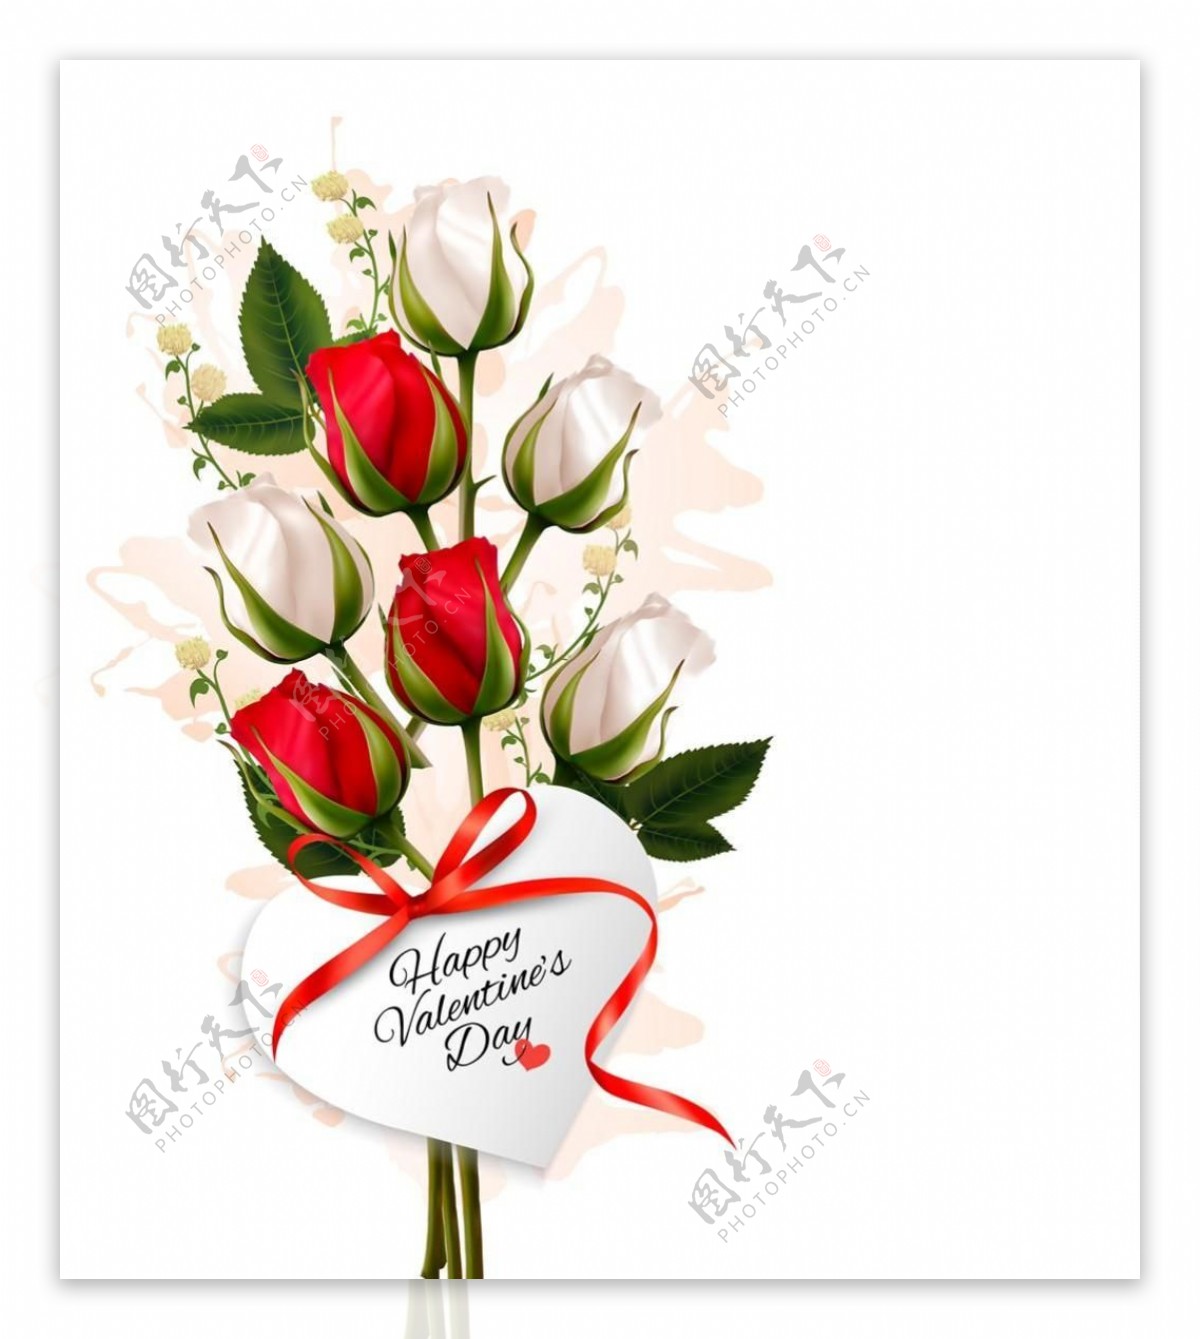 浪漫情人节与玫瑰花矢量素材制作模板